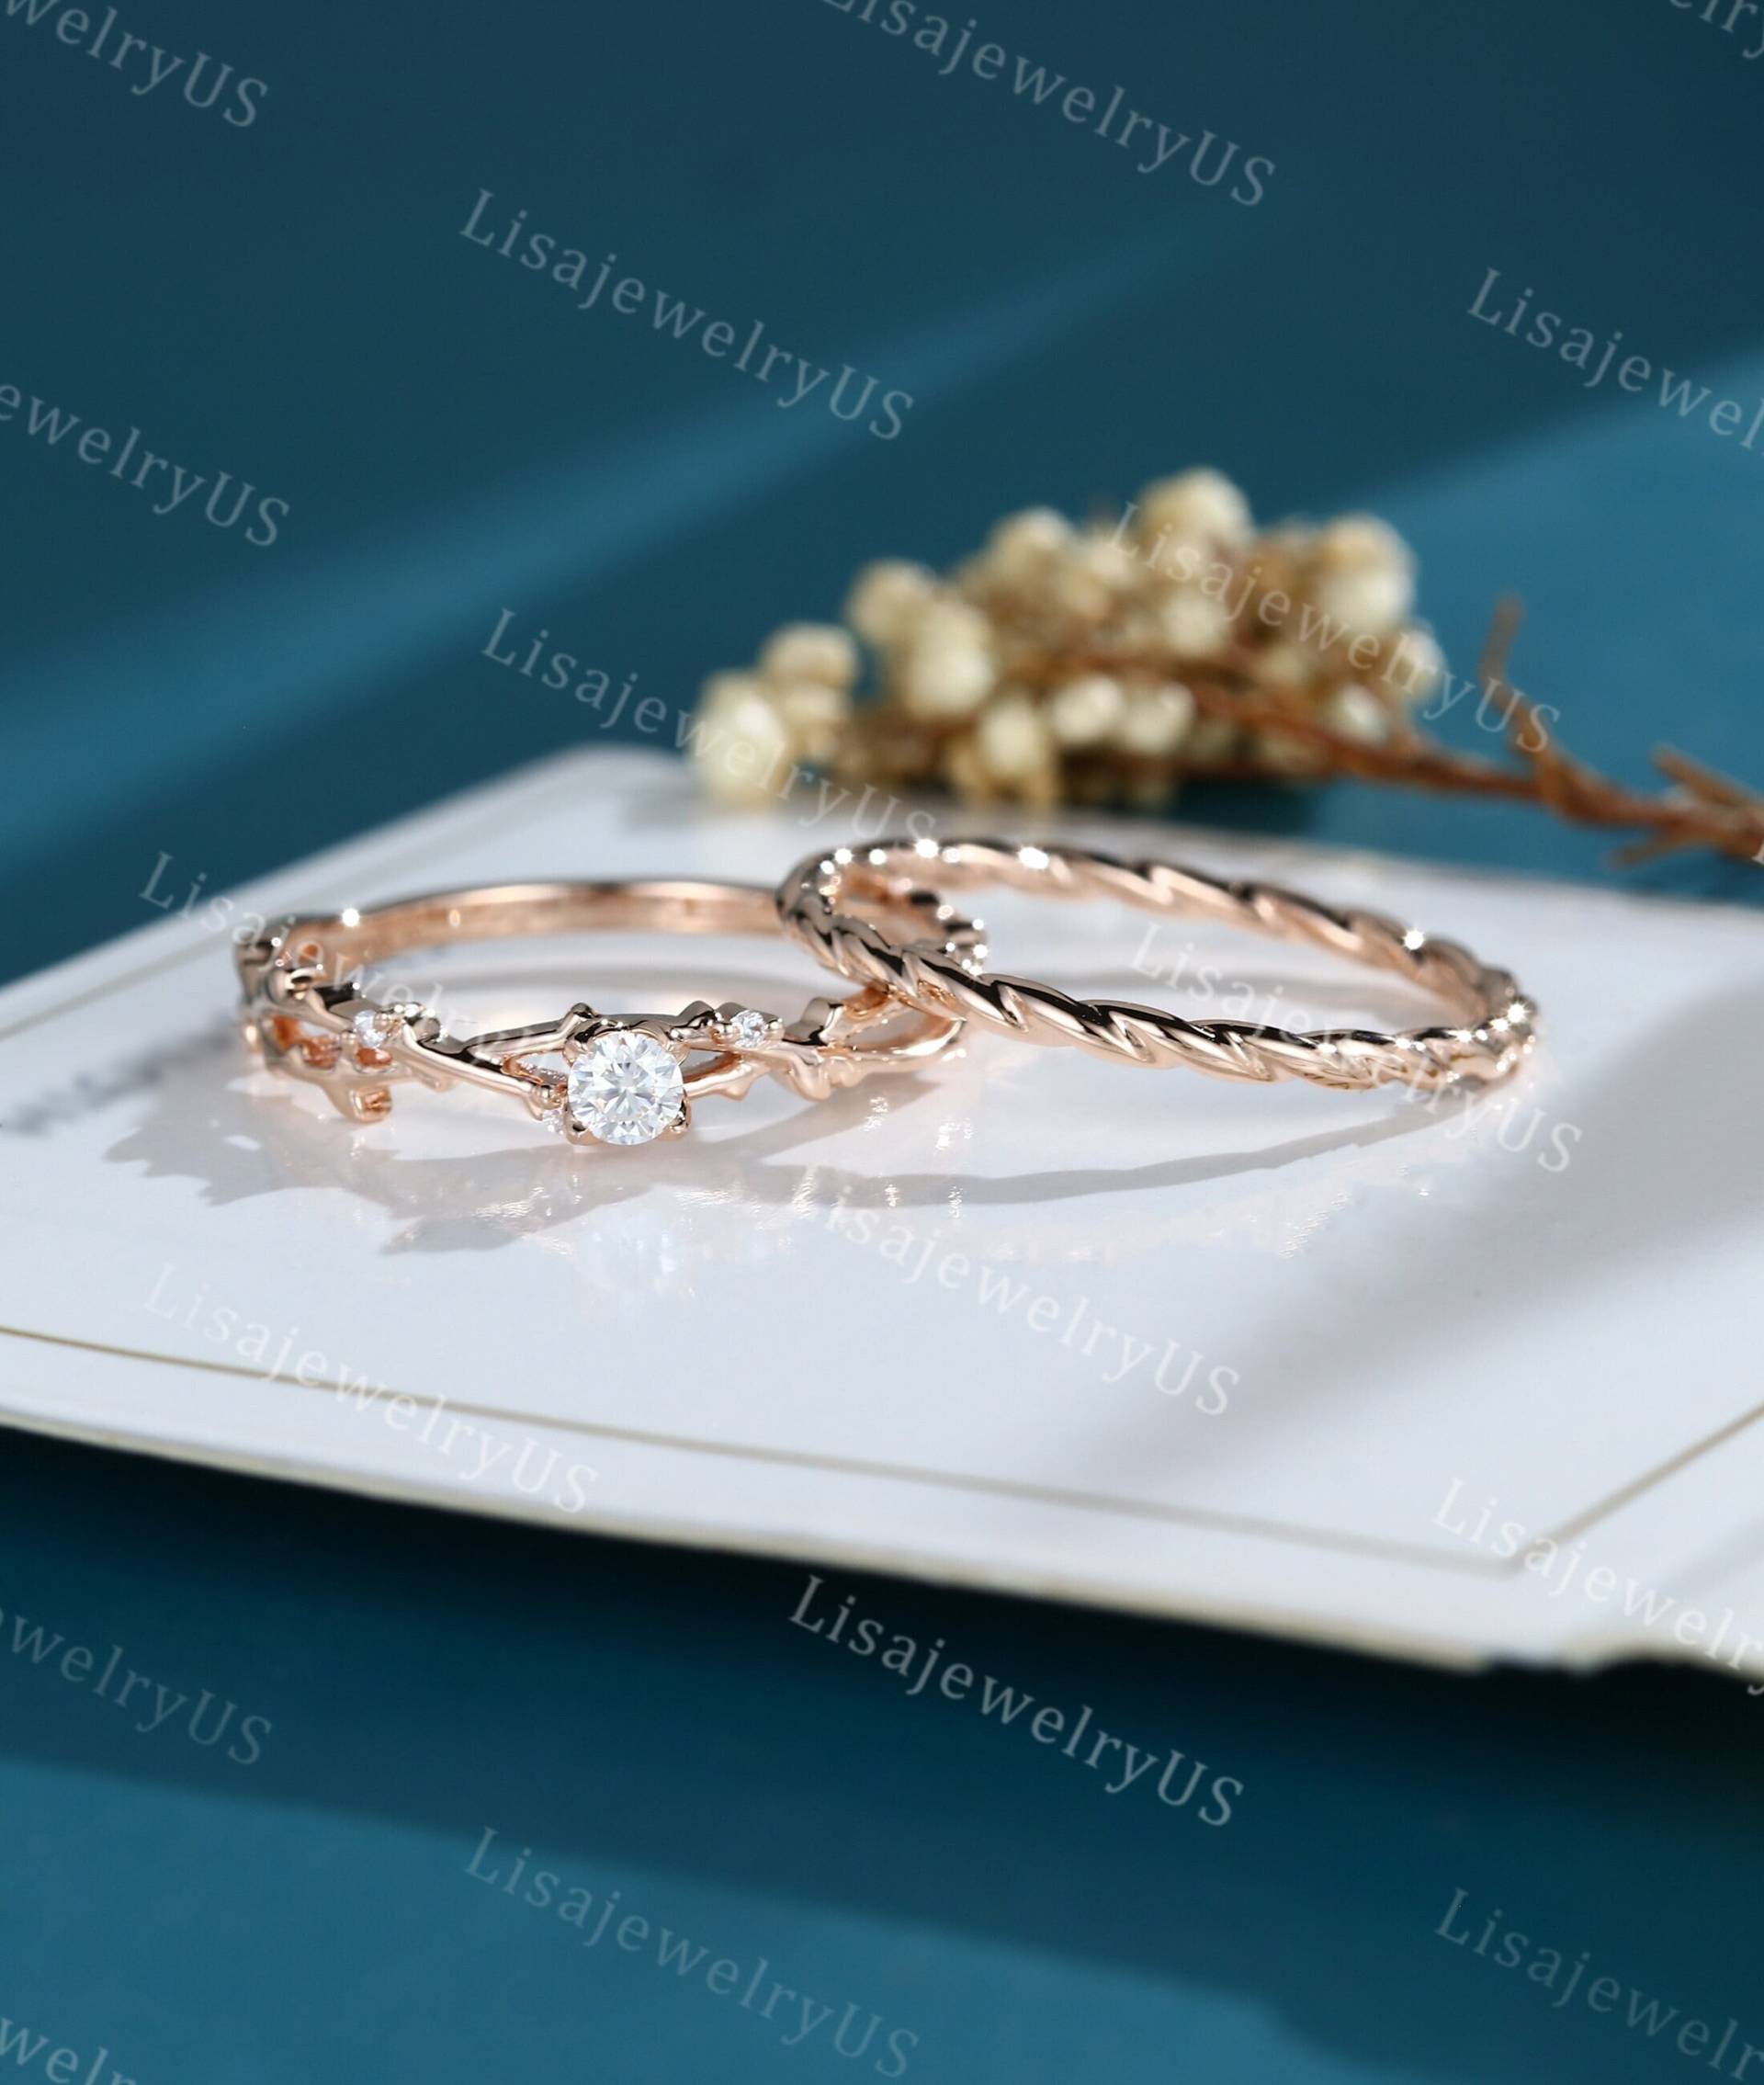 Diamant Verlobungsring Set Rosegold Vintage Art Deco Zierliche Verlobungsringe von LisajewelryUS